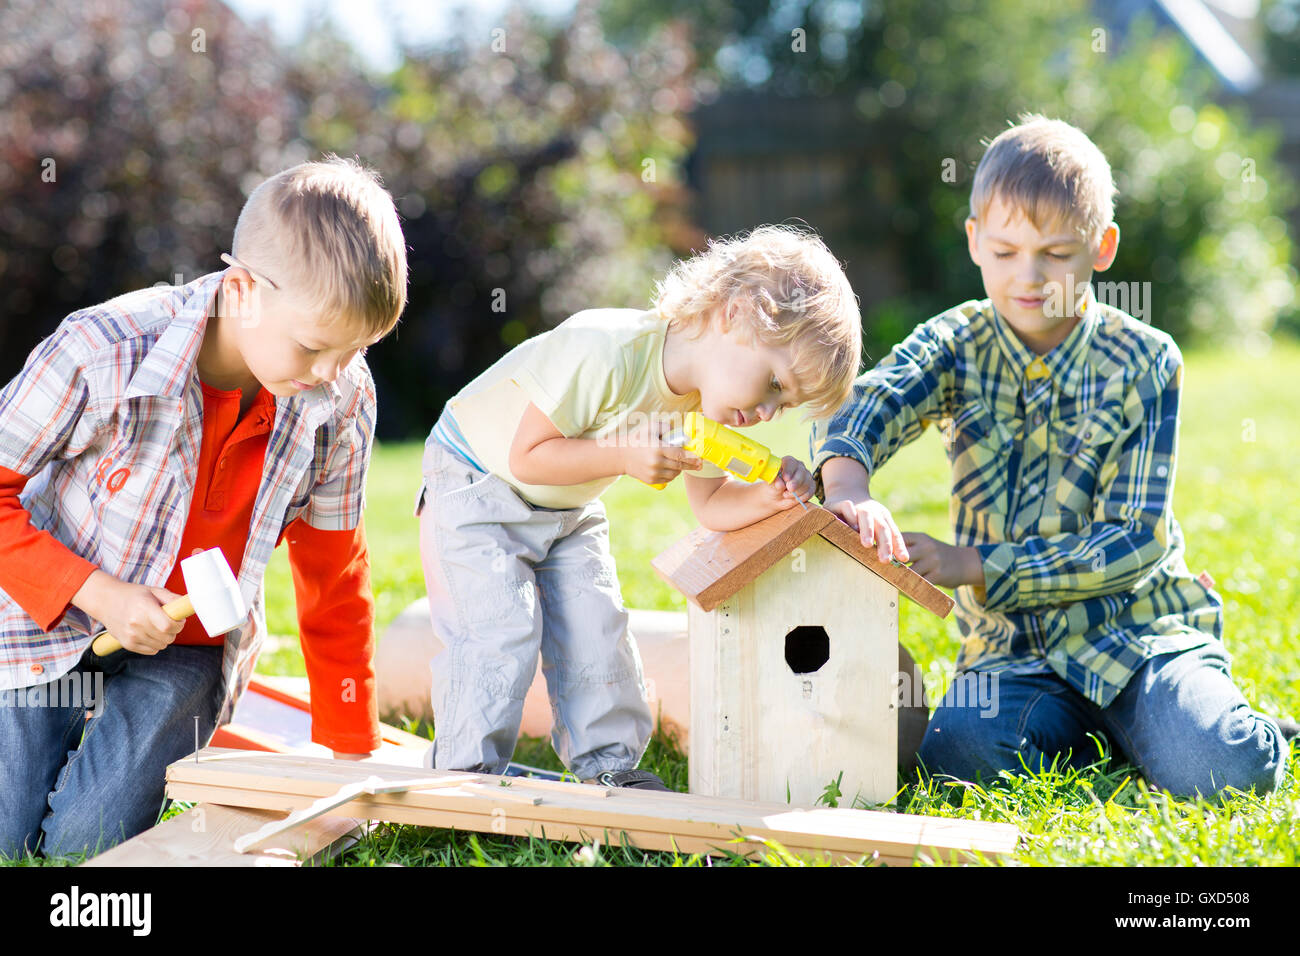 Los niños mano trabajando juntos sobre el césped en verano Foto de stock